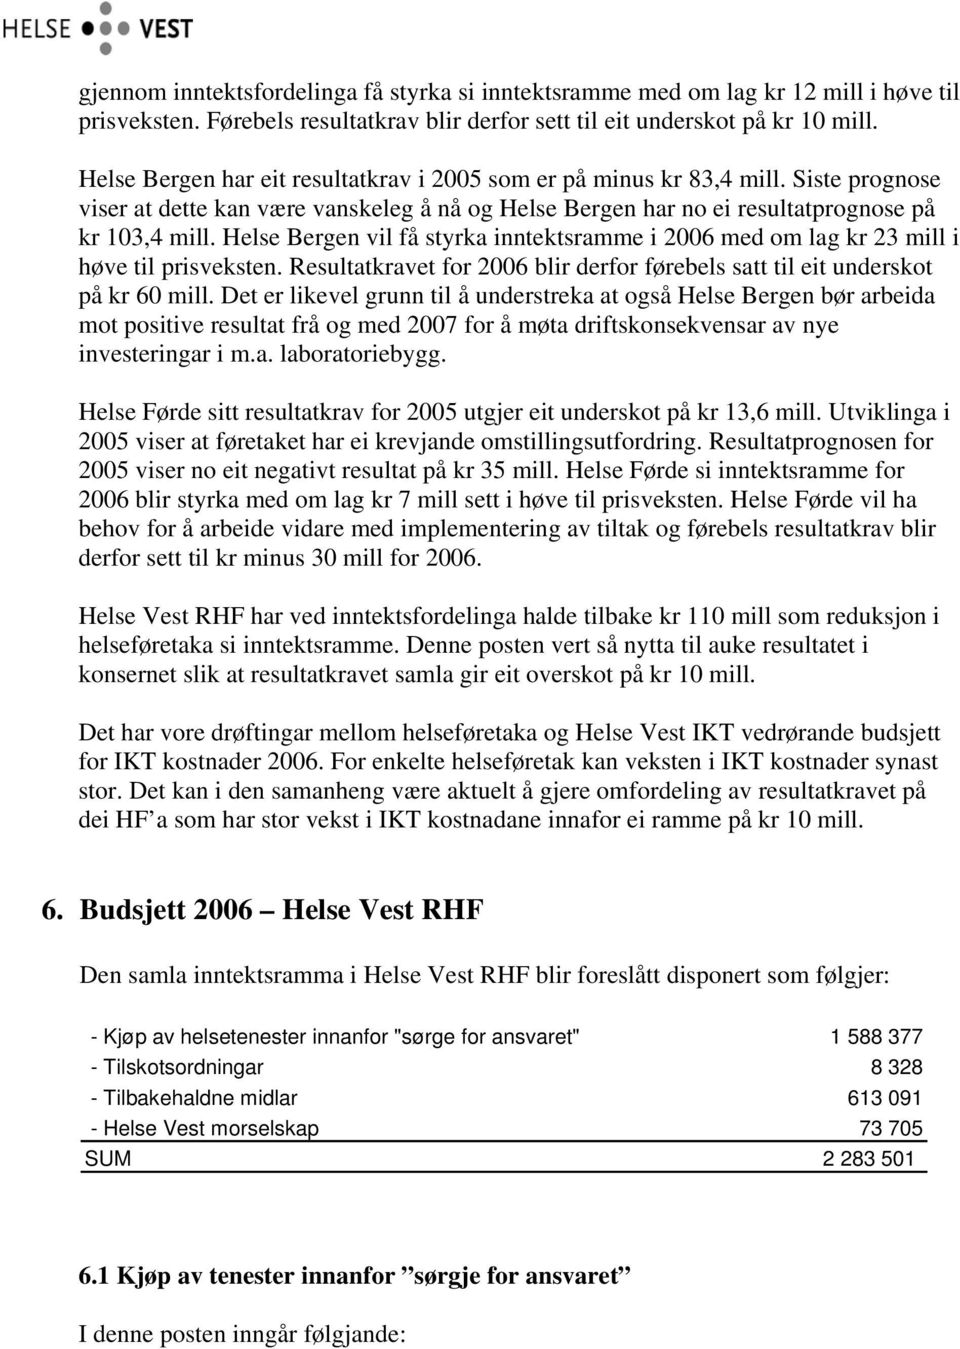 Helse Bergen vil få styrka inntektsramme i 2006 med om lag kr 23 mill i høve til prisveksten. Resultatkravet for 2006 blir derfor førebels satt til eit underskot på kr 60 mill.